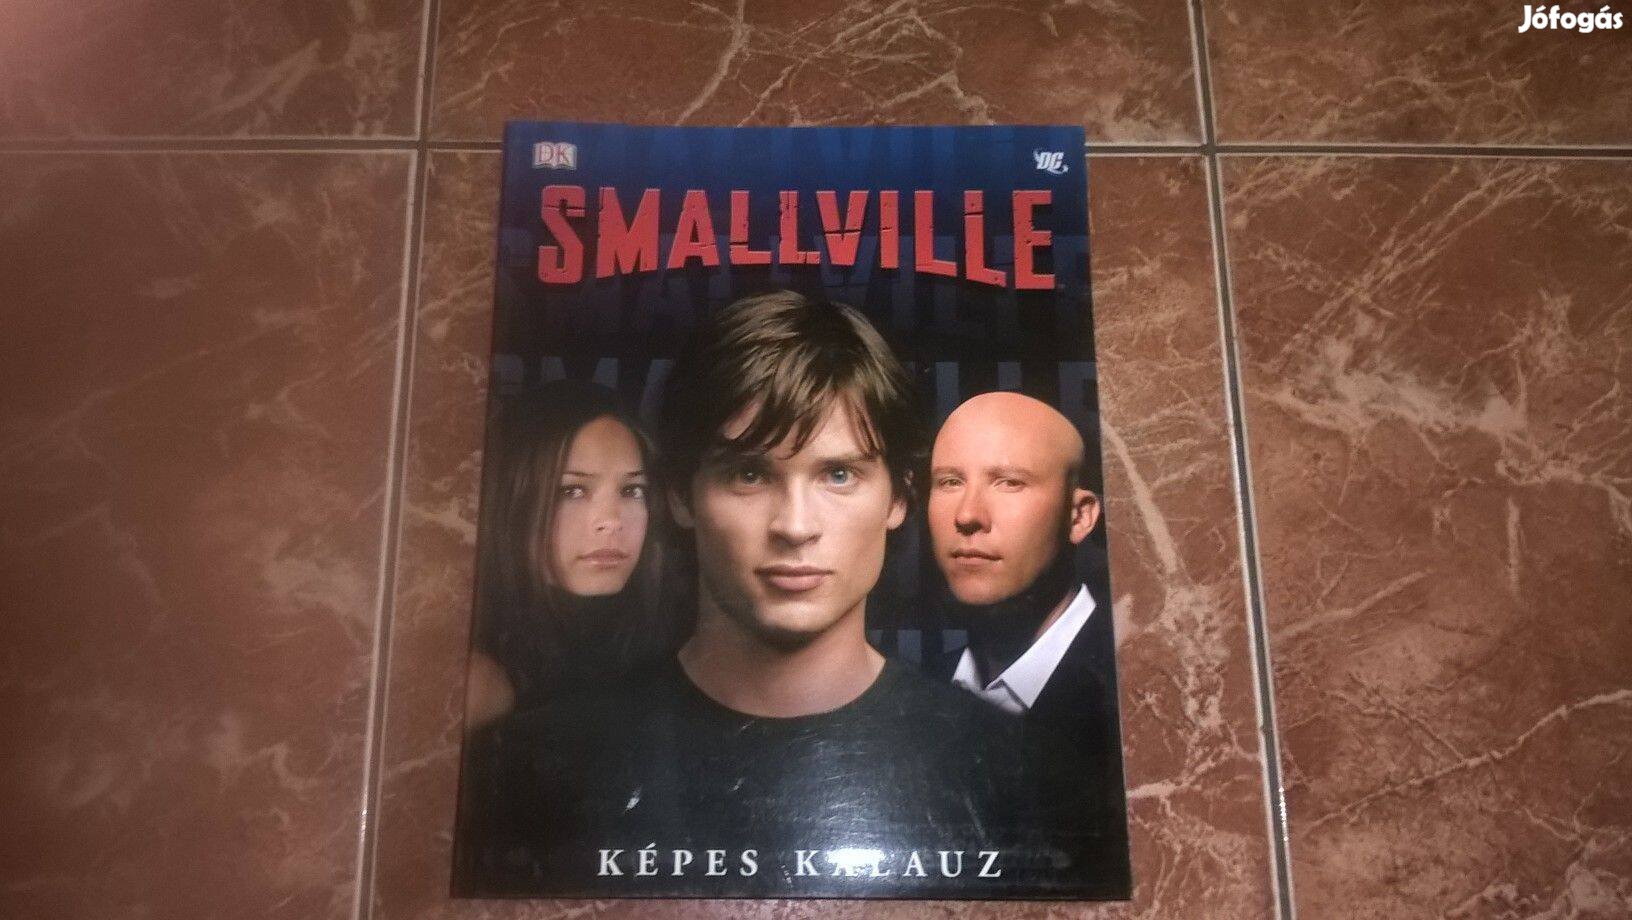 Smallville Képes kalauz